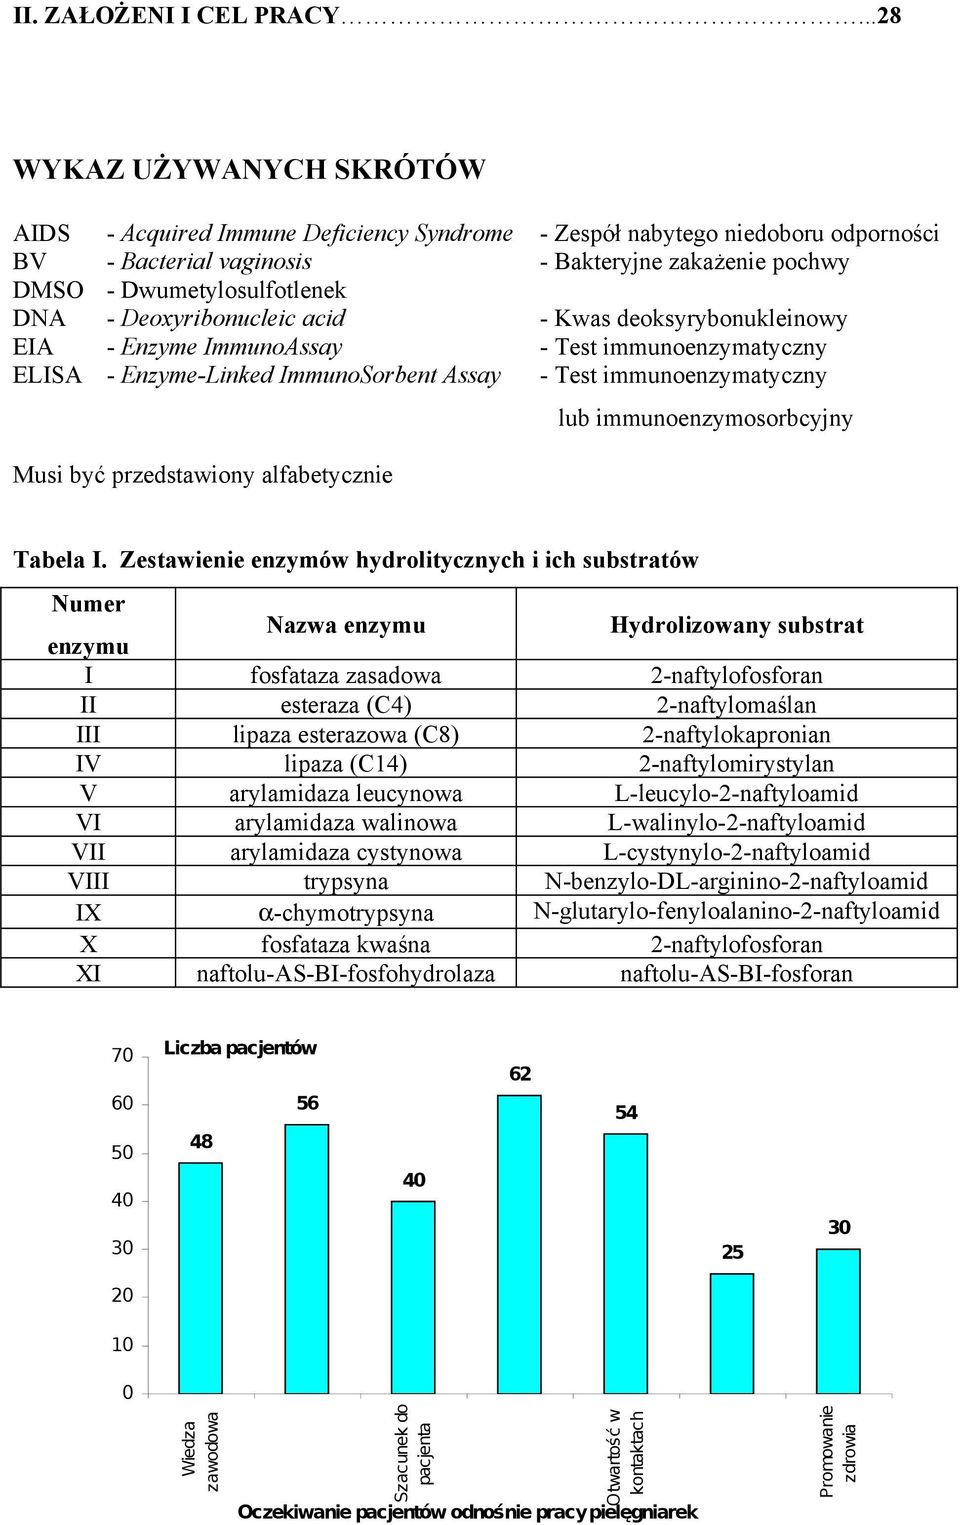 Deoxyribonucleic acid - Kwas deoksyrybonukleinowy EIA - Enzyme ImmunoAssay - Test immunoenzymatyczny ELISA - Enzyme-Linked ImmunoSorbent Assay - Test immunoenzymatyczny Musi być przedstawiony